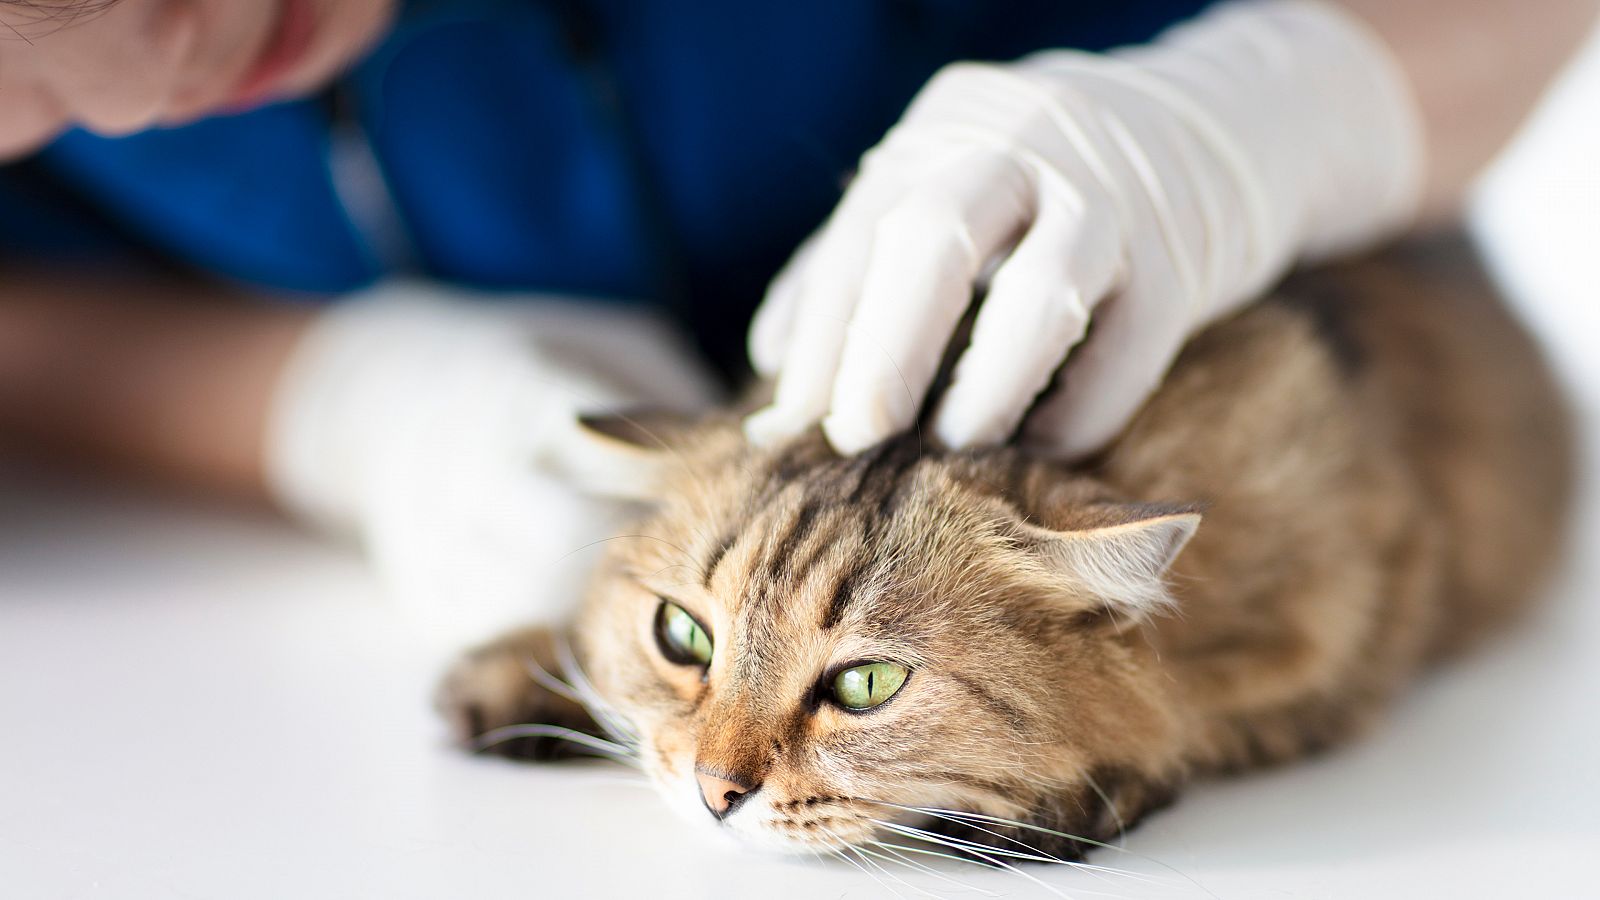 Los científicos consideran a los gatos como "víctimas colaterales" de la COVID-19 en los humanos.